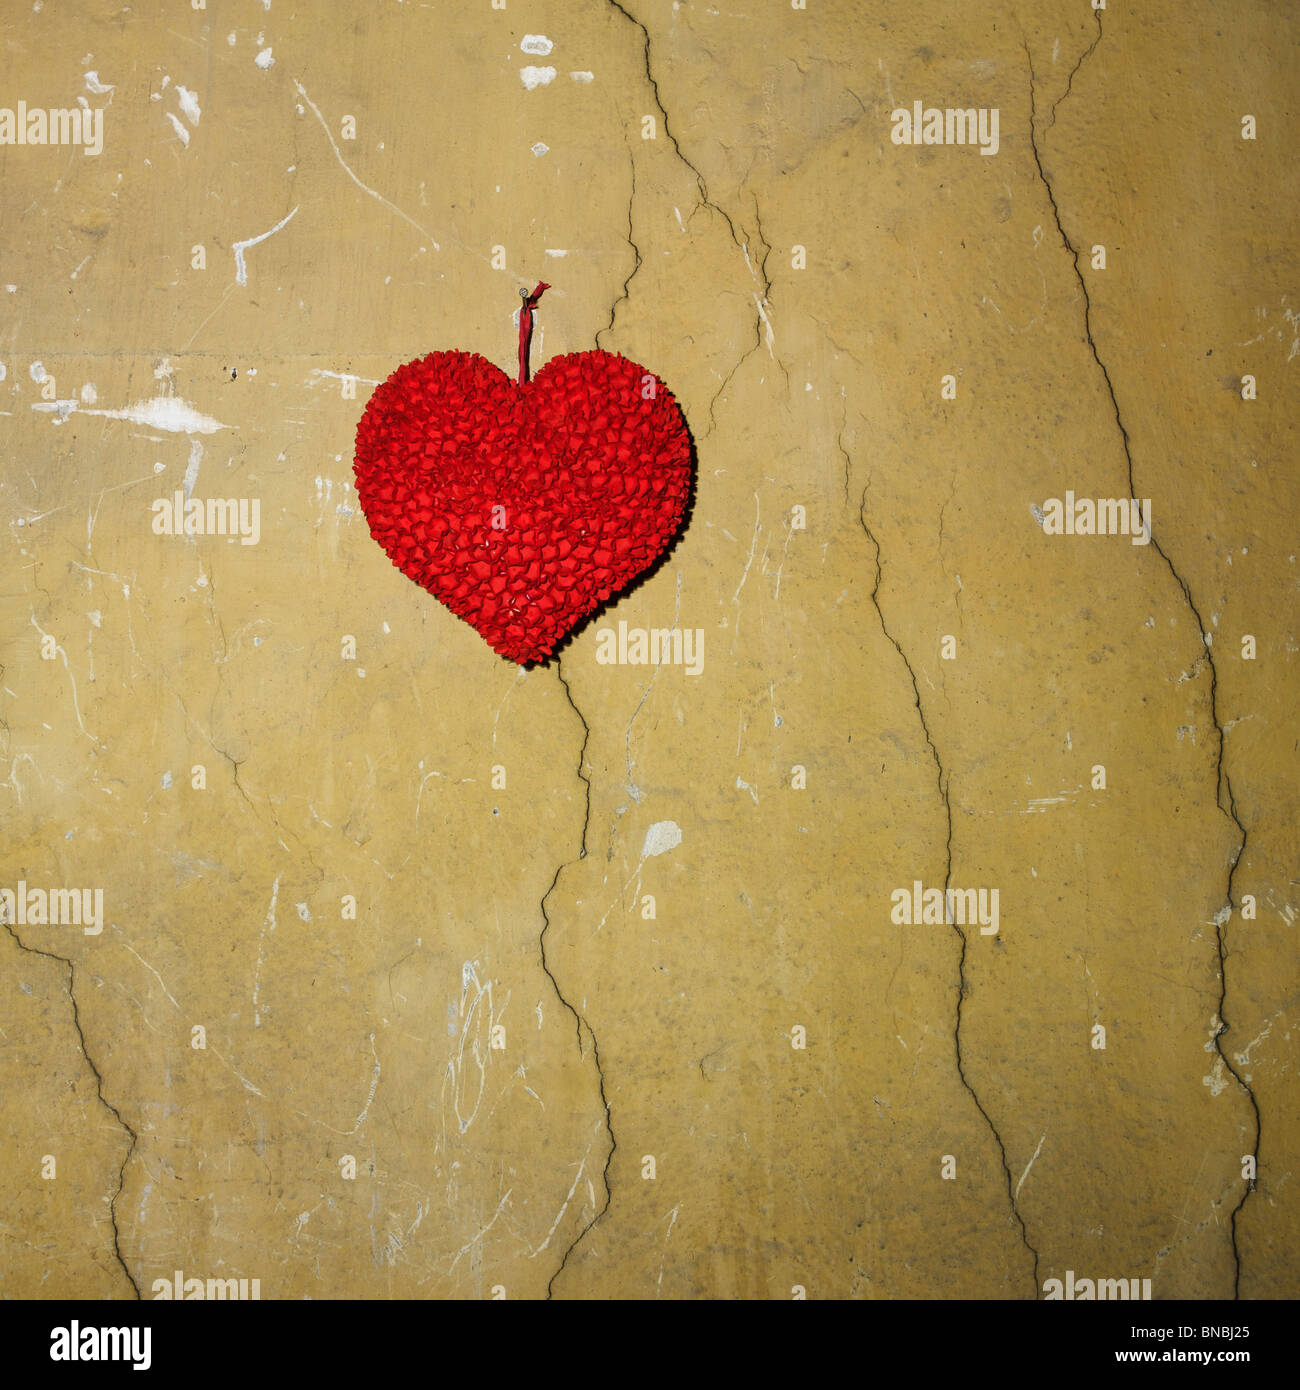 Corazón de papel fijo en una pared agrietada. Foto de stock